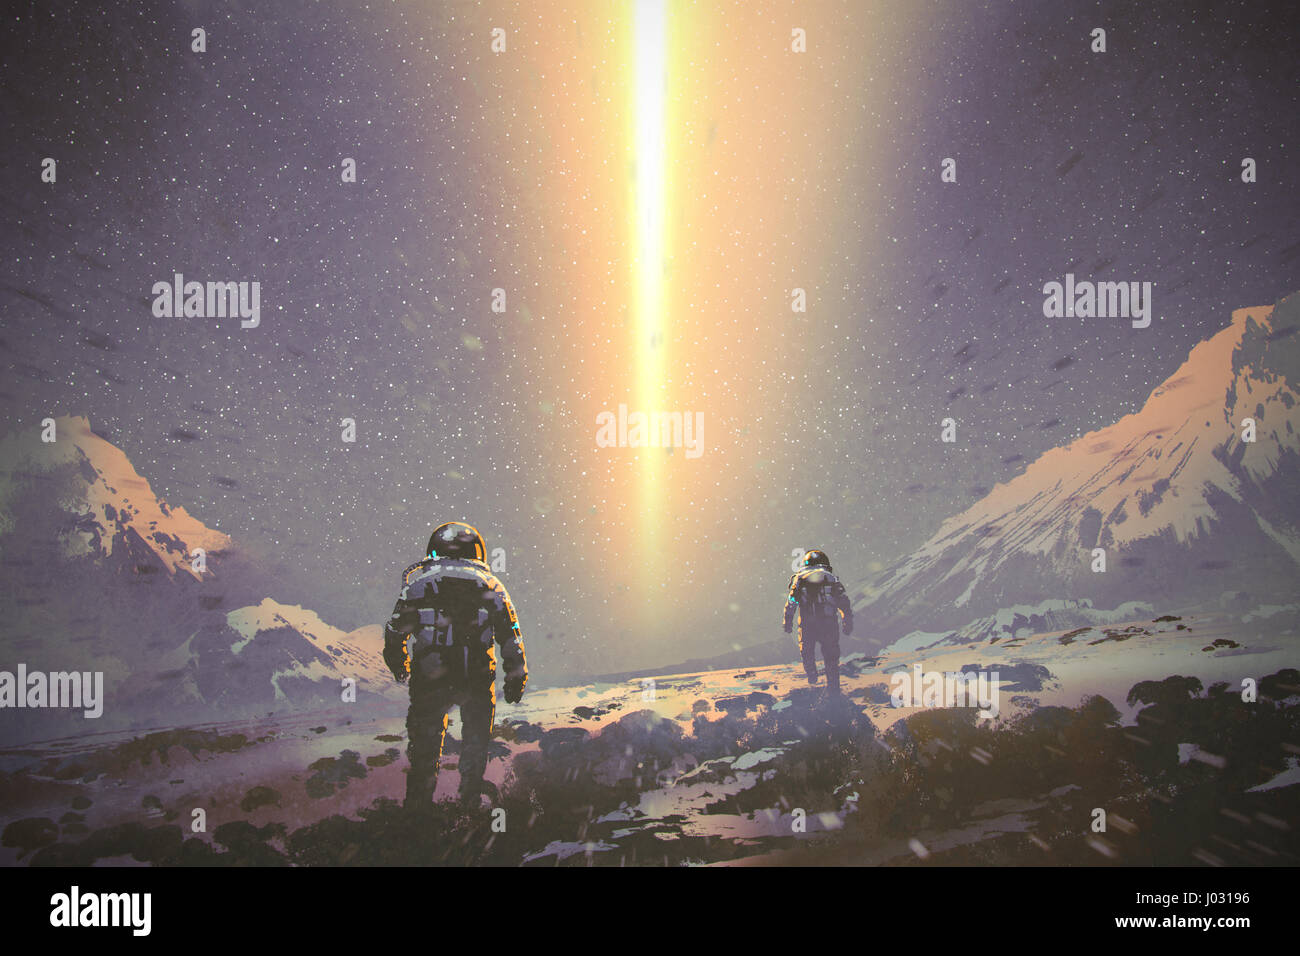 Los astronautas caminando al misterio haz de luz desde el cielo, concepto de sci-fi, ilustración pintura Foto de stock